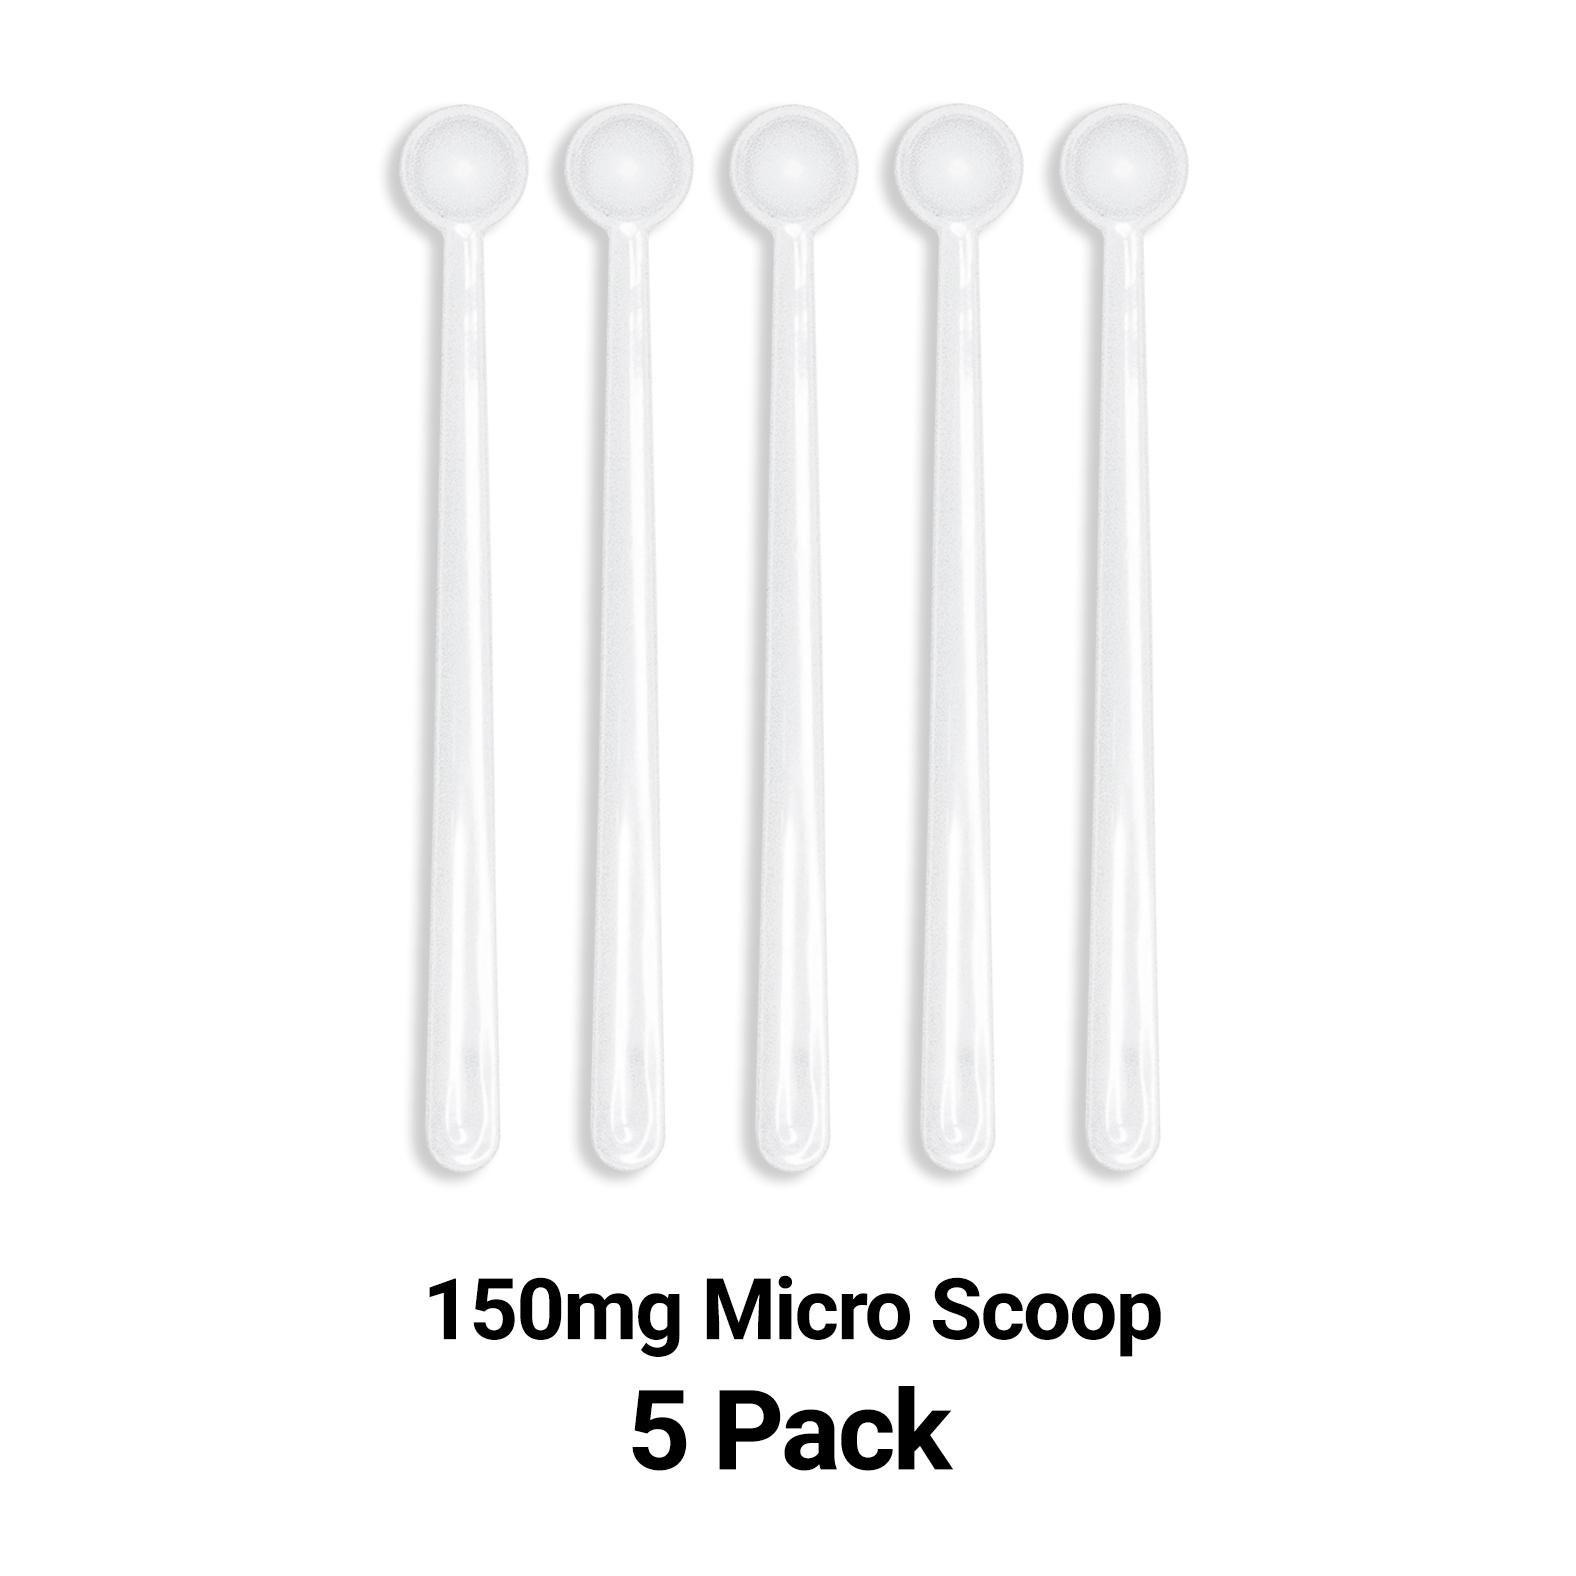 Micro Scoop Variety Pack